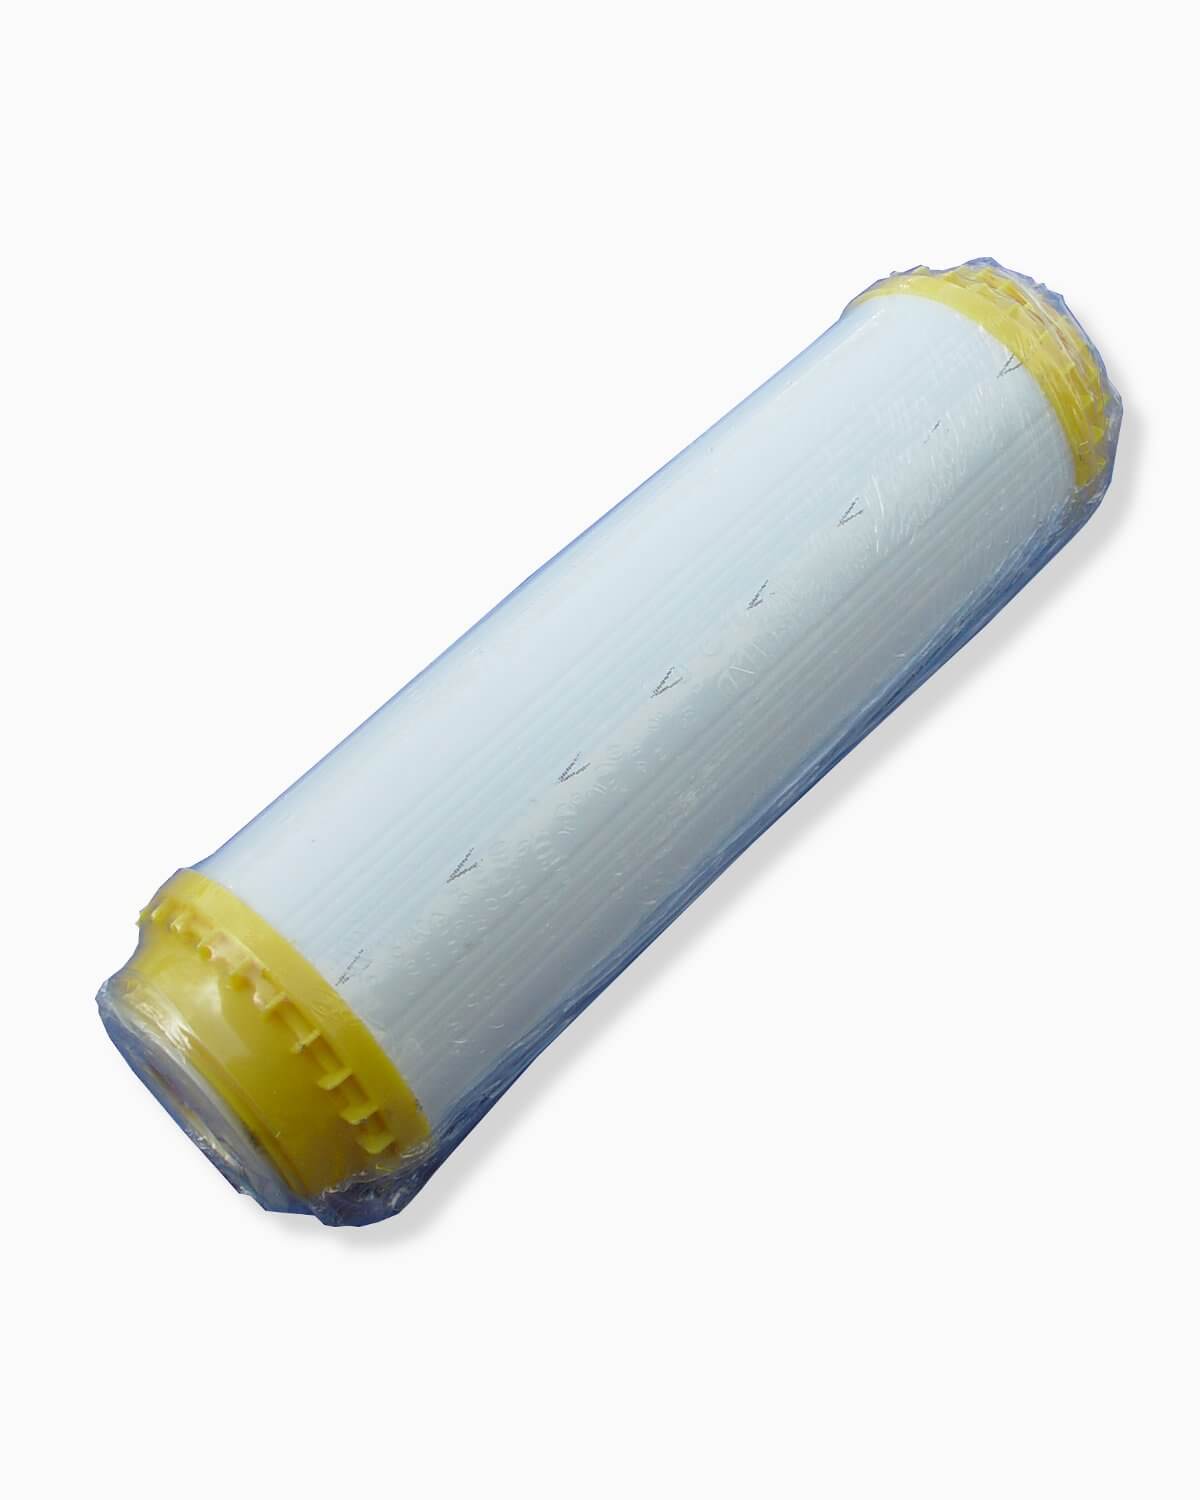 Ein PURION Filtereinsatz Entkalkungs-Kunststoffschlauch mit einem gelben Schlauch darauf, der im Trinkwasser-Entkalkungsfiltereinsatz verwendet wird.